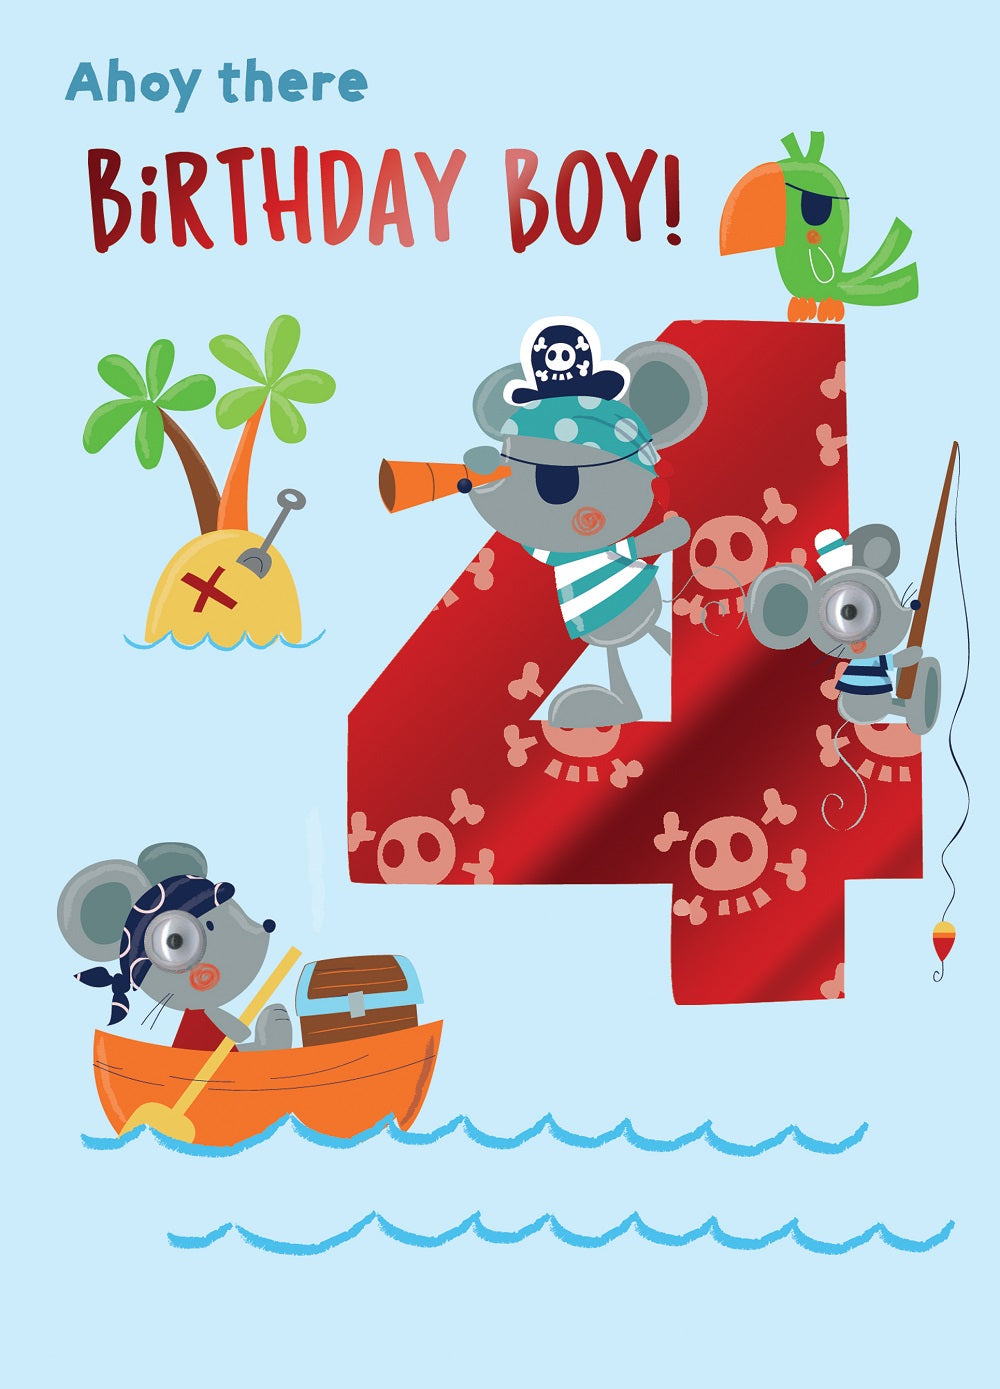 Ahoy There Birthday Boy 4th Birthday Greeting Card